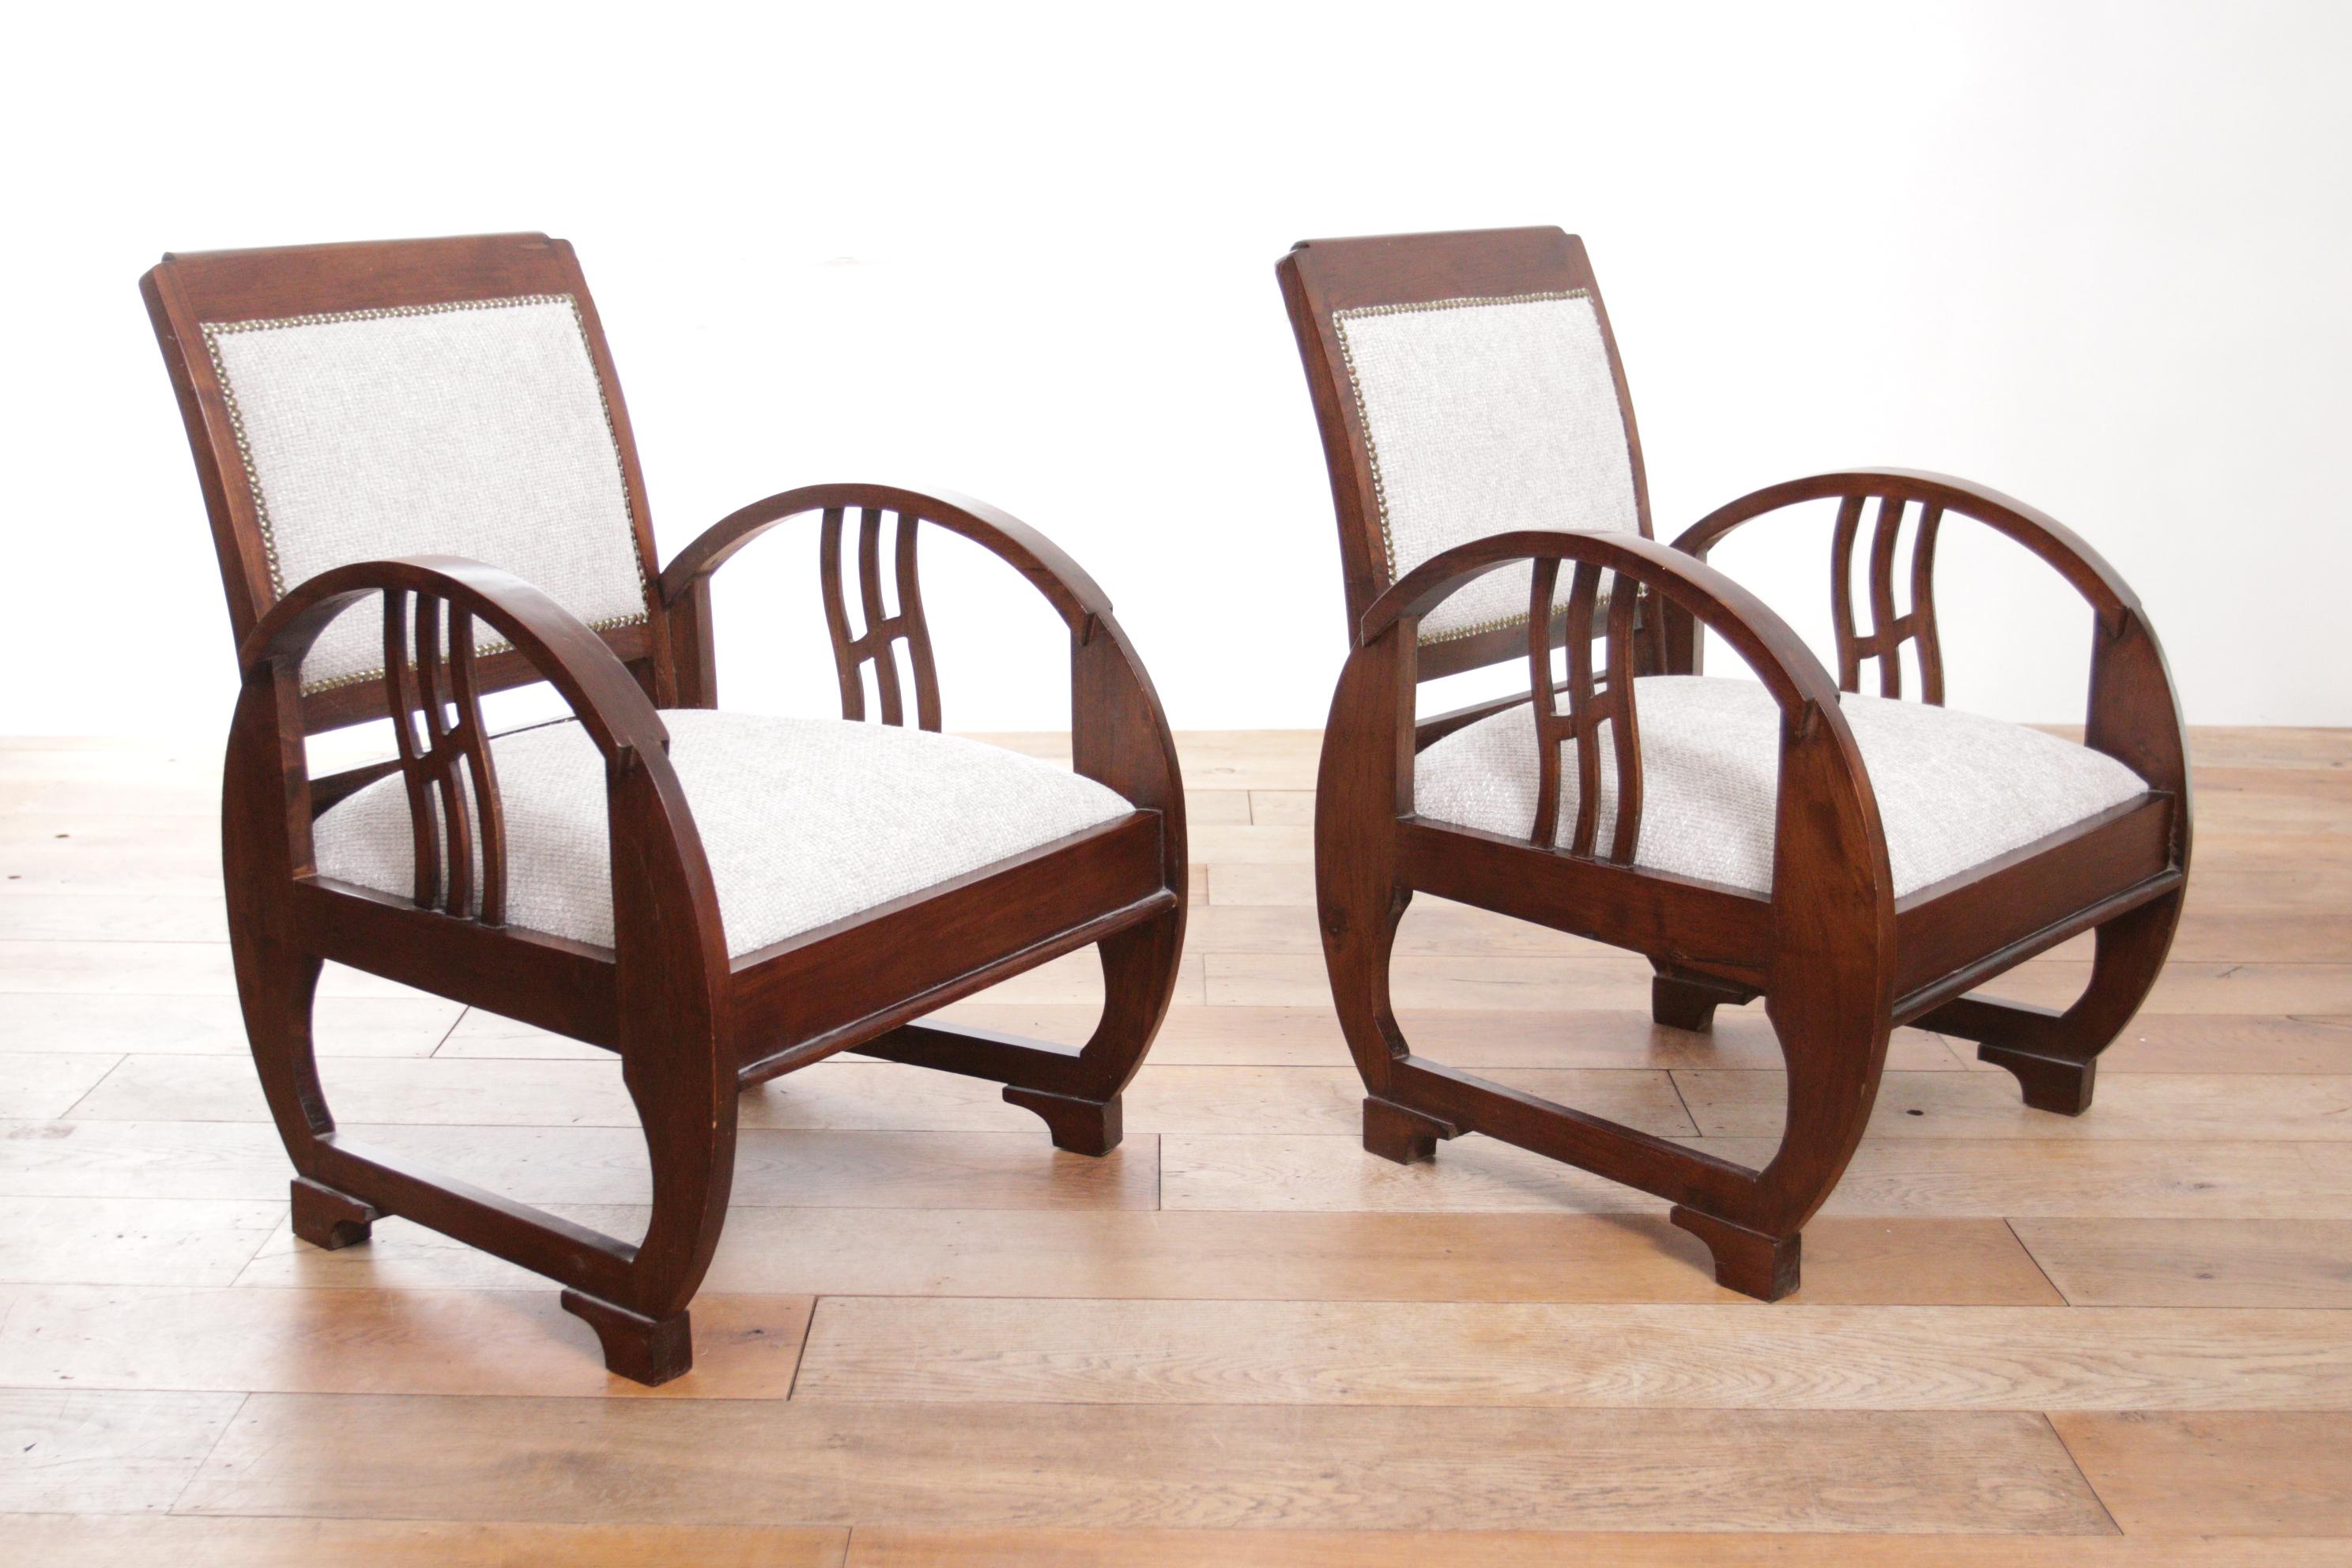 Si vous êtes à la recherche d'une paire de chaises élégantes et confortables pour ajouter un peu de charme et de style à votre salon, vous pourriez envisager ces deux fauteuils en bois français vintage art déco exclusifs. 
Ces chaises ont été